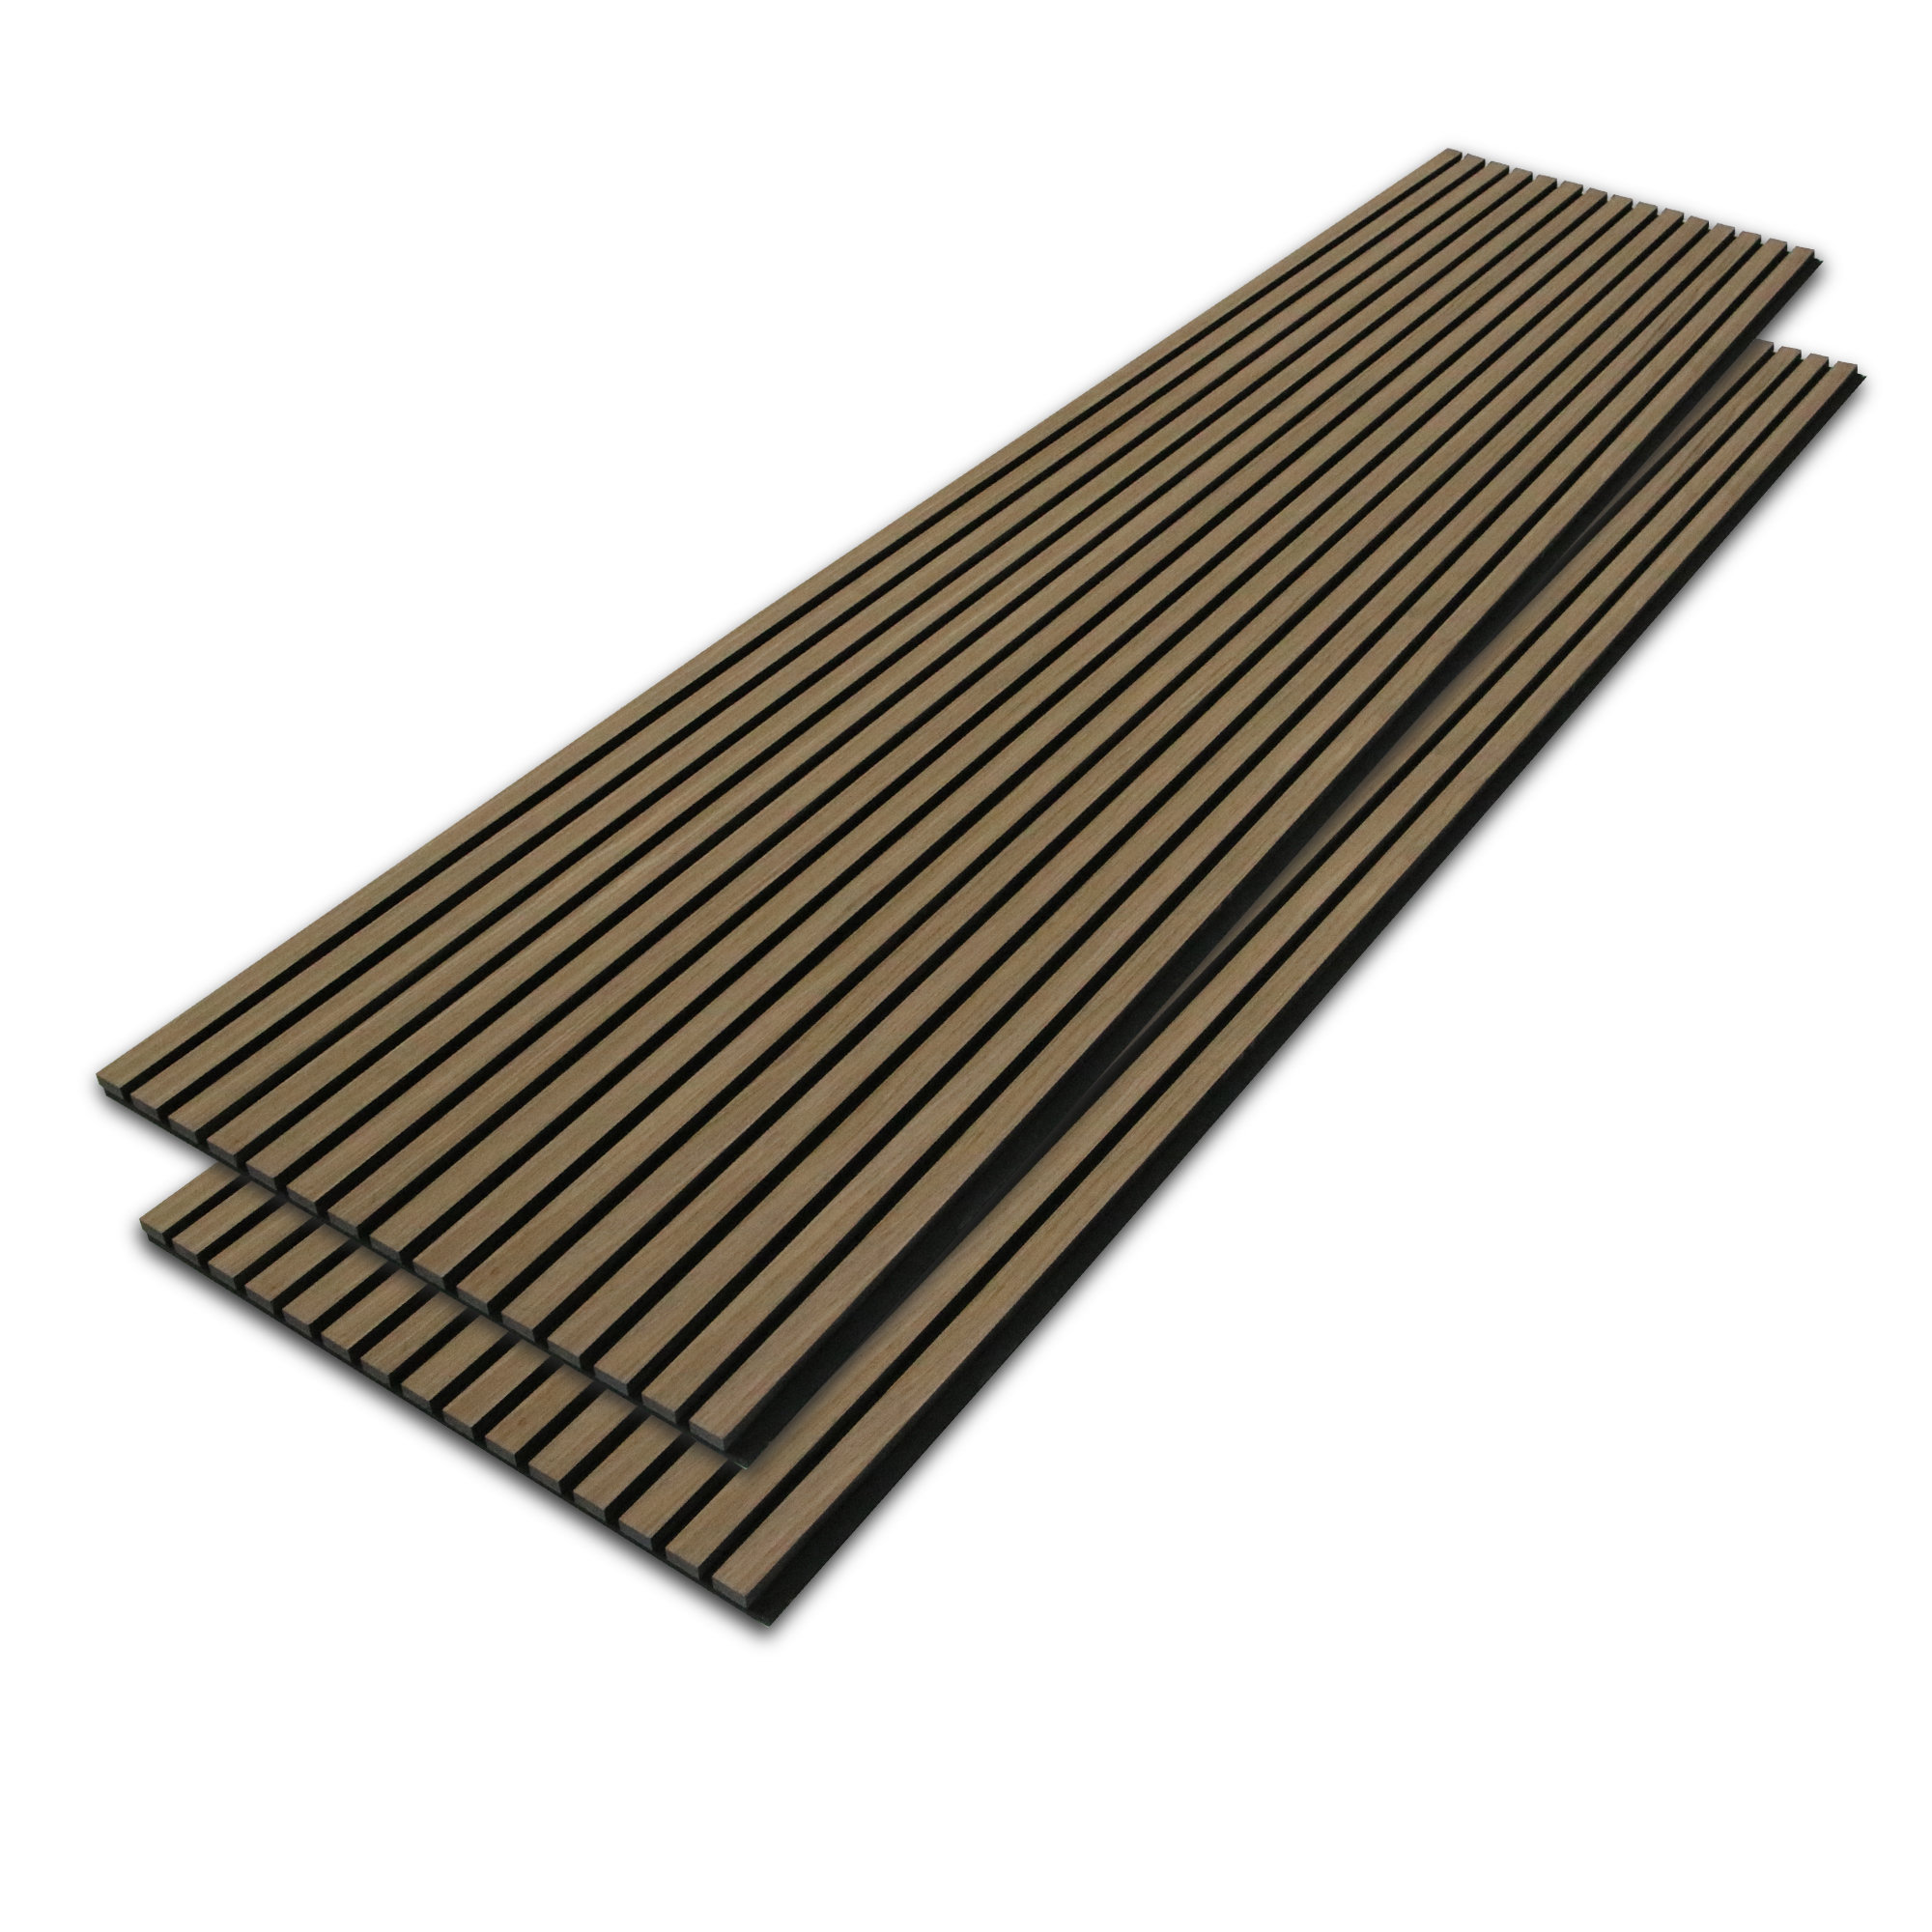 Oak Acoustic Slat Wood Wall Panel, Premium Quality Wood Panels